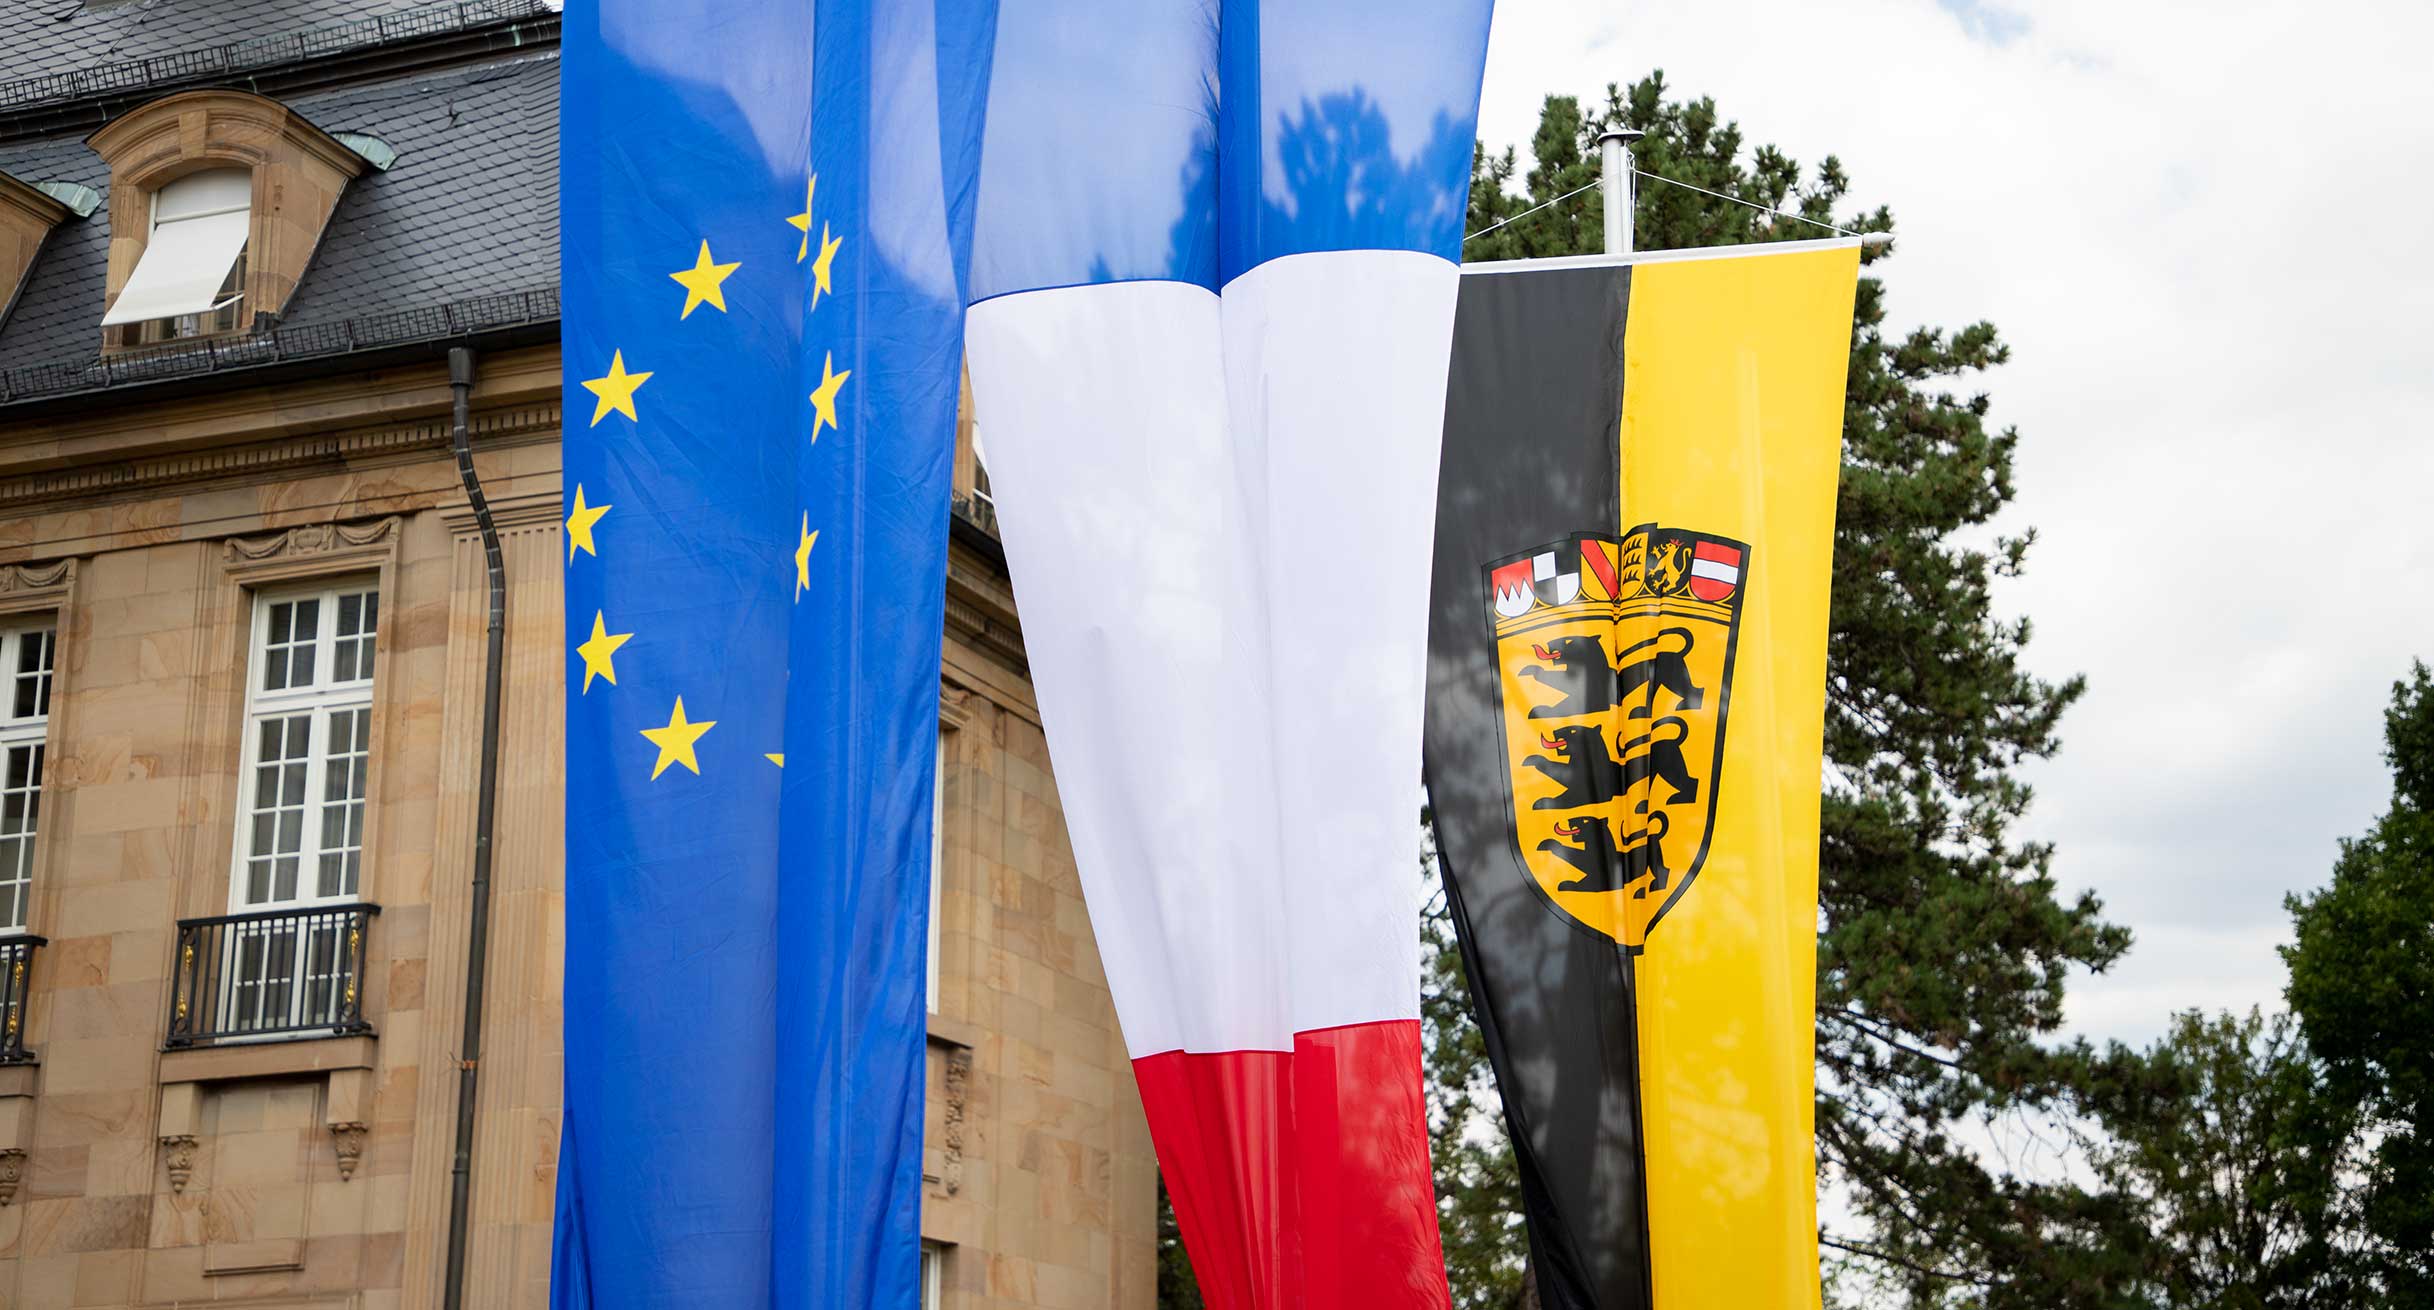 An Fahnemasten hängen die Fahne der EU, die französische Fahne und die baden-württembergische Fahne.']